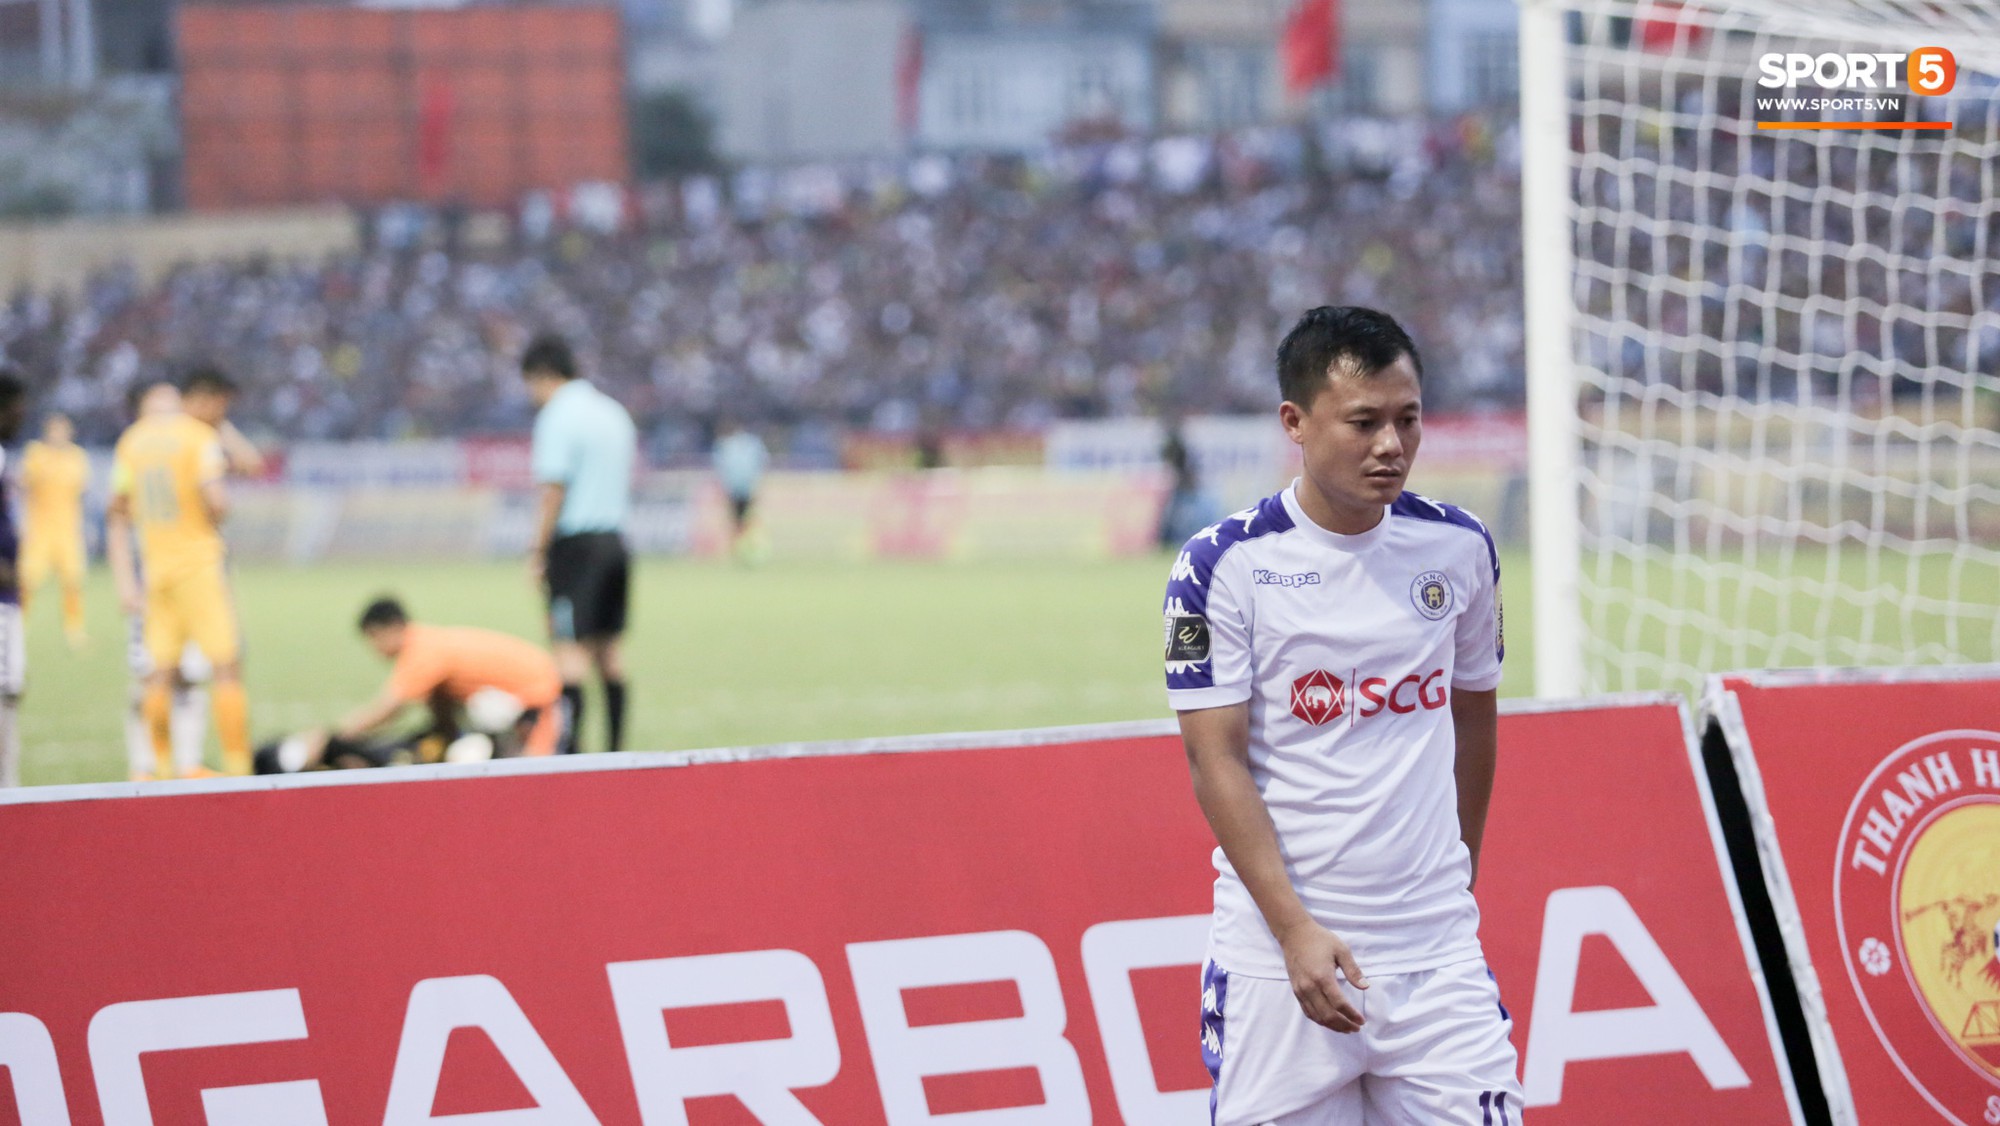 Quang Hải nổi cáu vì cậu bé nhặt bóng câu giờ trong ngày Hà Nội FC thất bại trước Thanh Hóa - Ảnh 11.